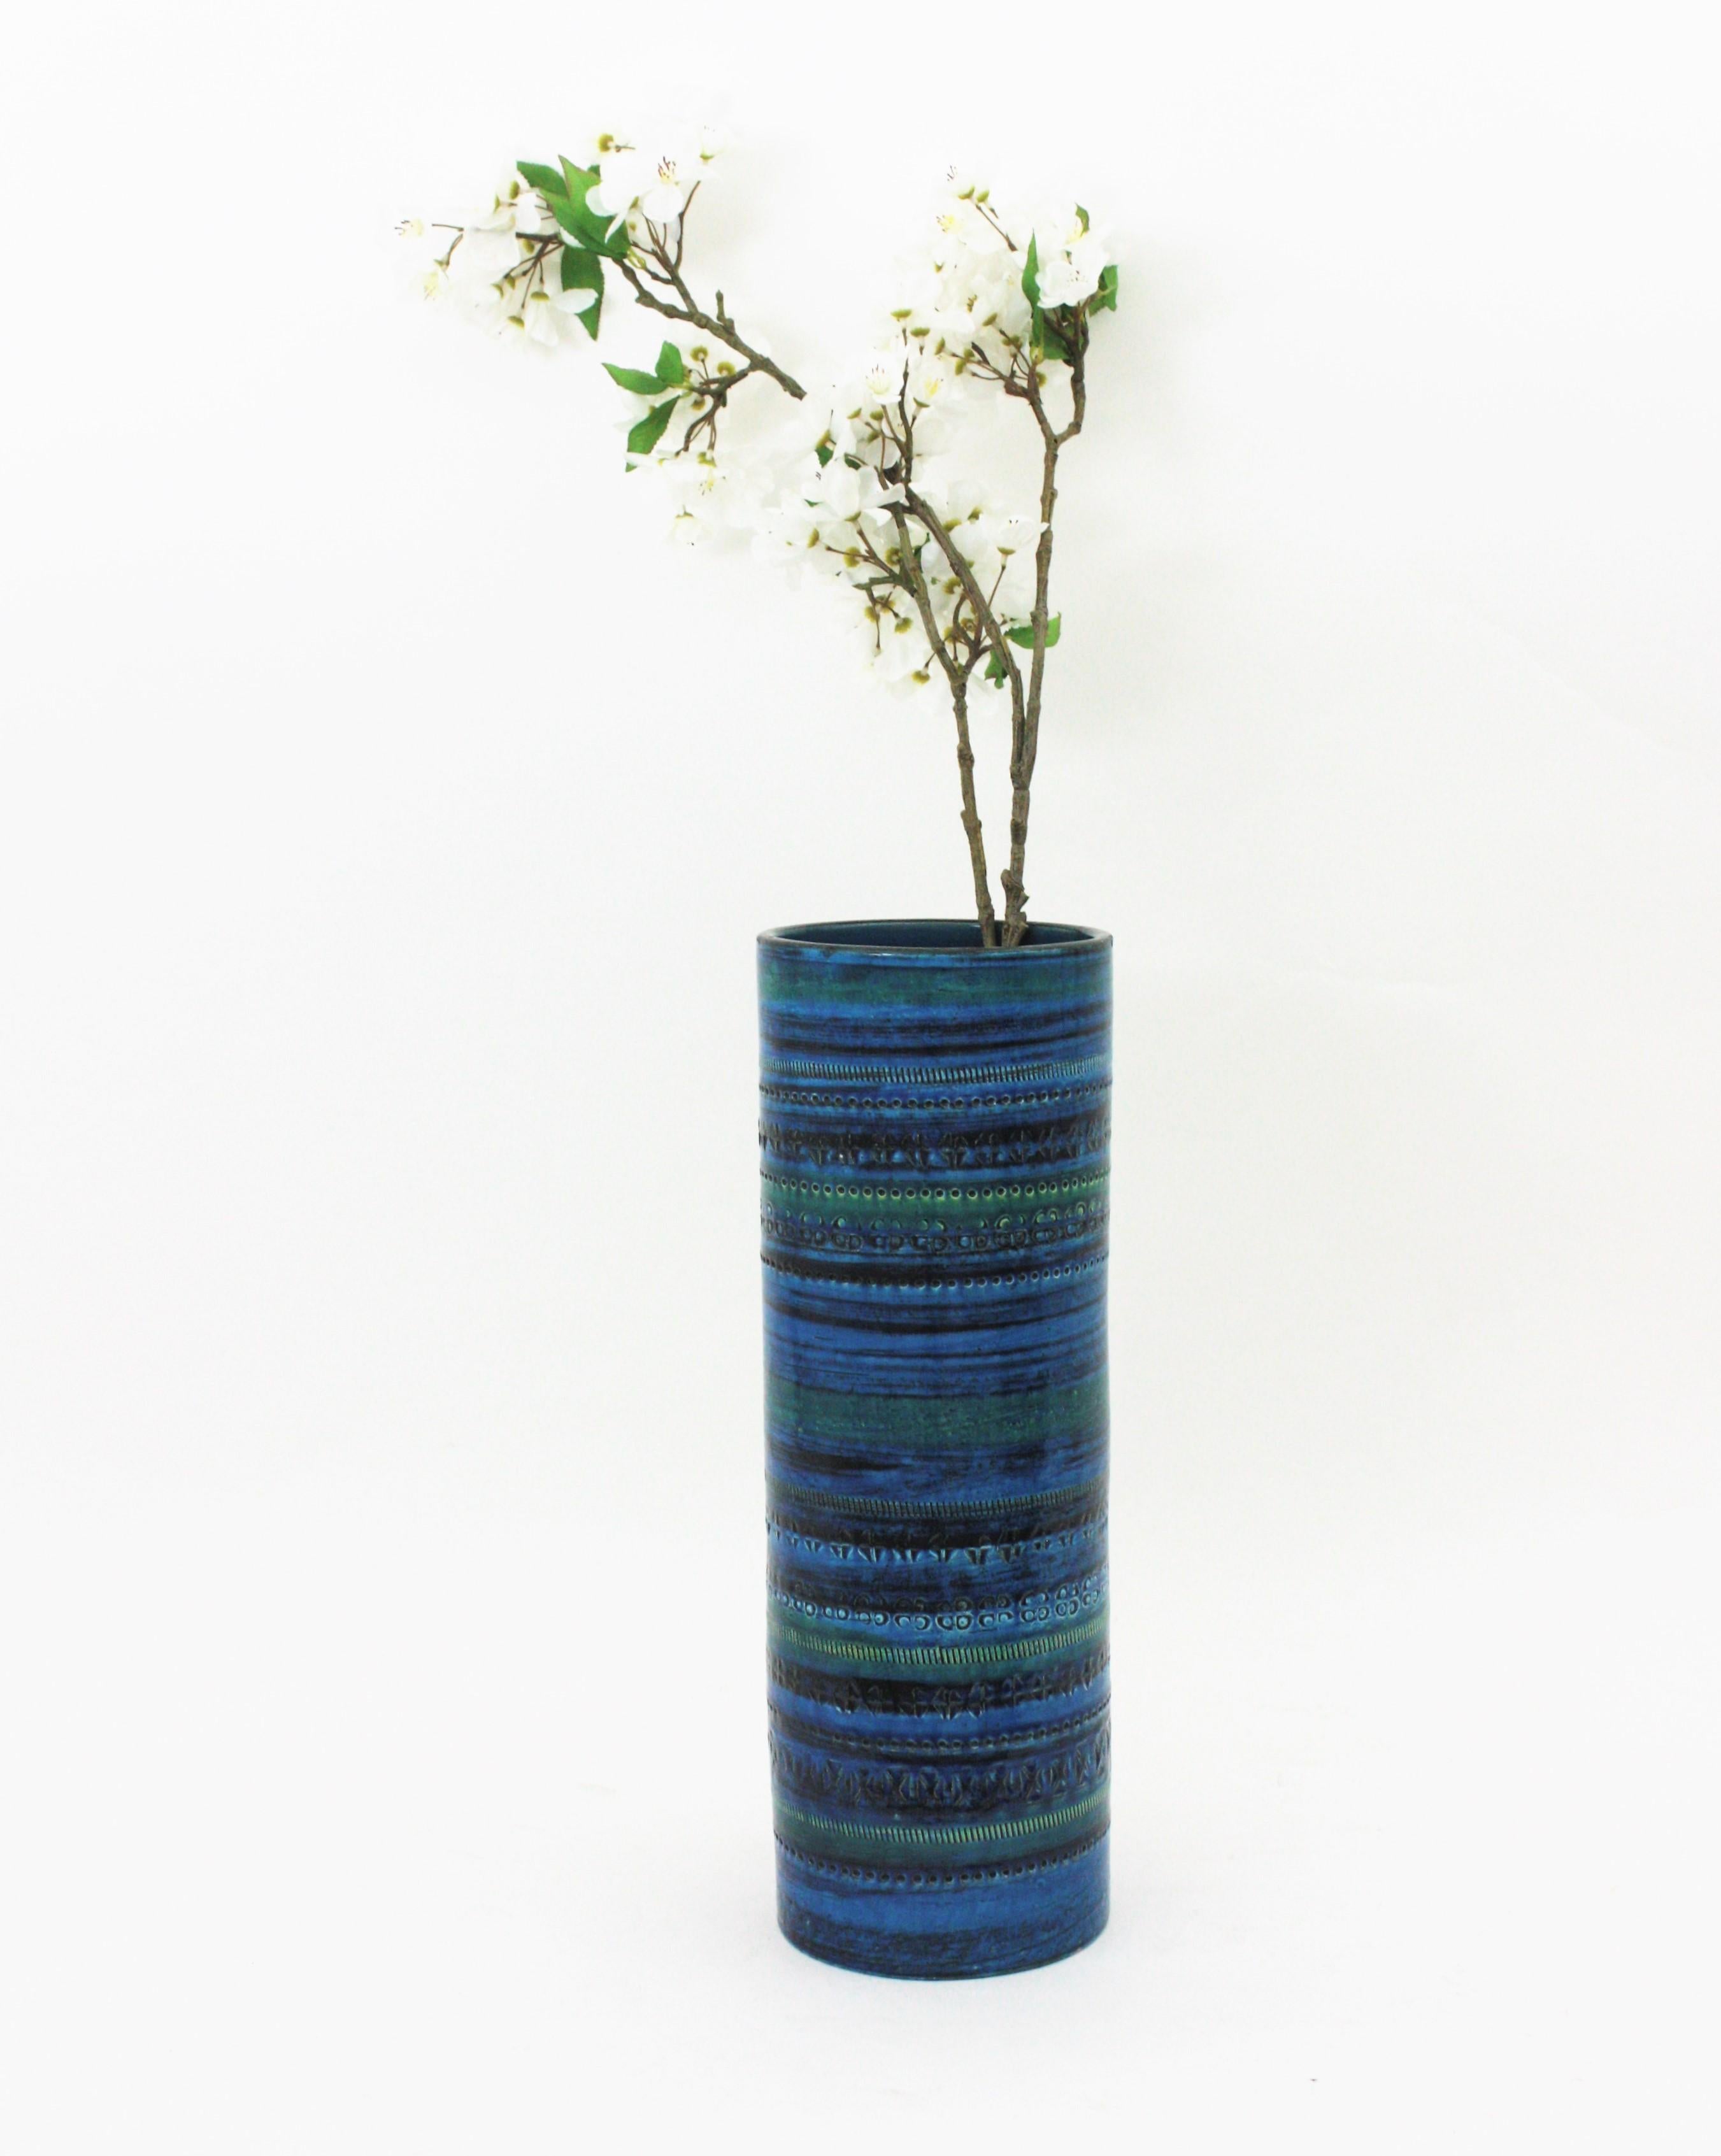 Aldo Londi Bitossi Rimini Blue Glazed Ceramic XL Vase, Italy, 1960s For Sale 5